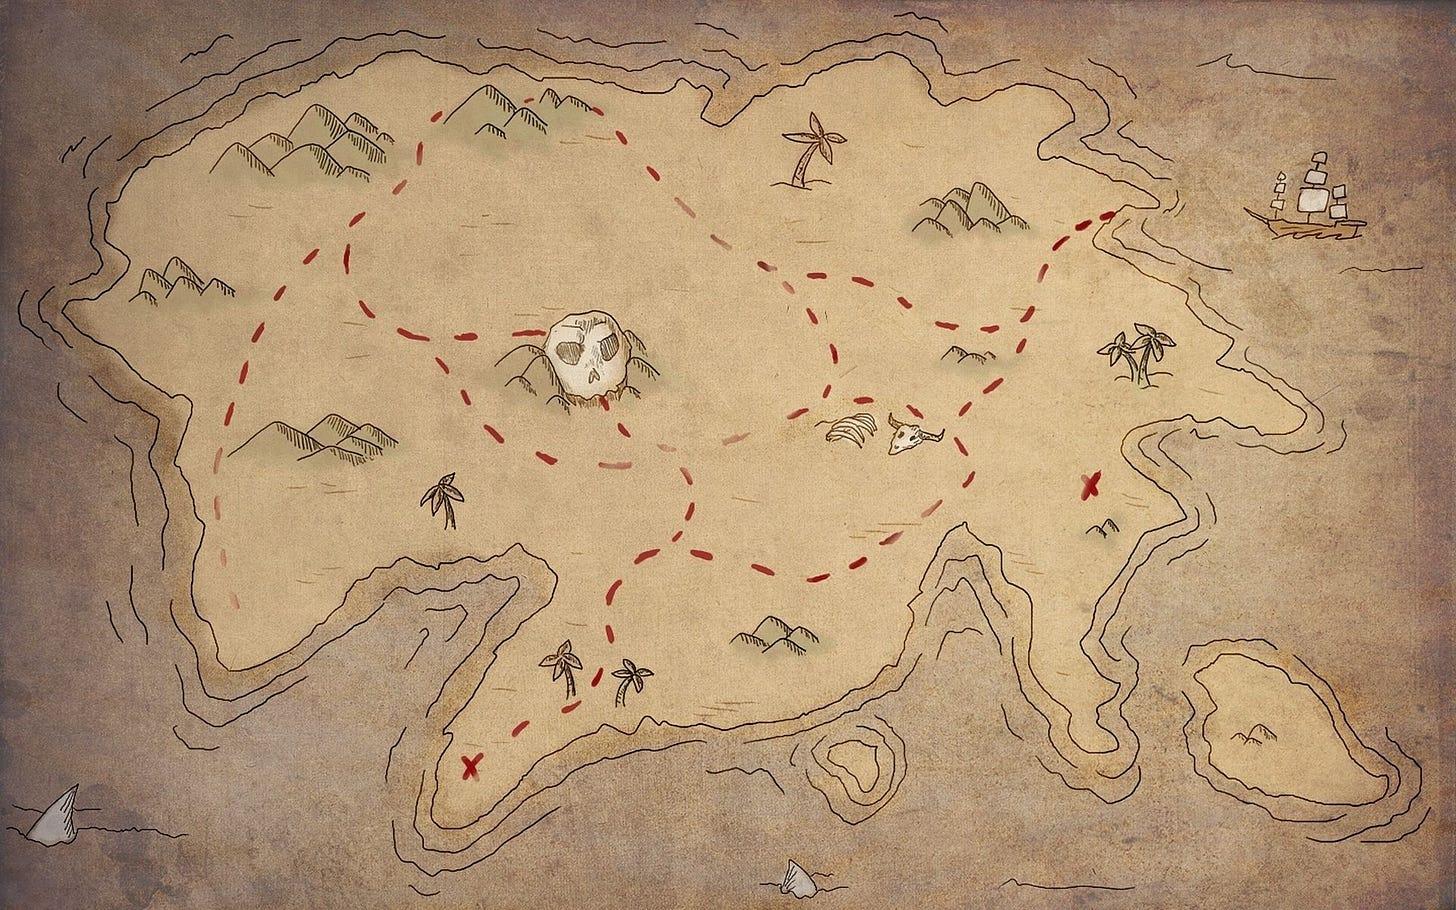 Pirate Treasure Map Wallpapers - Top Free Pirate Treasure Map ...